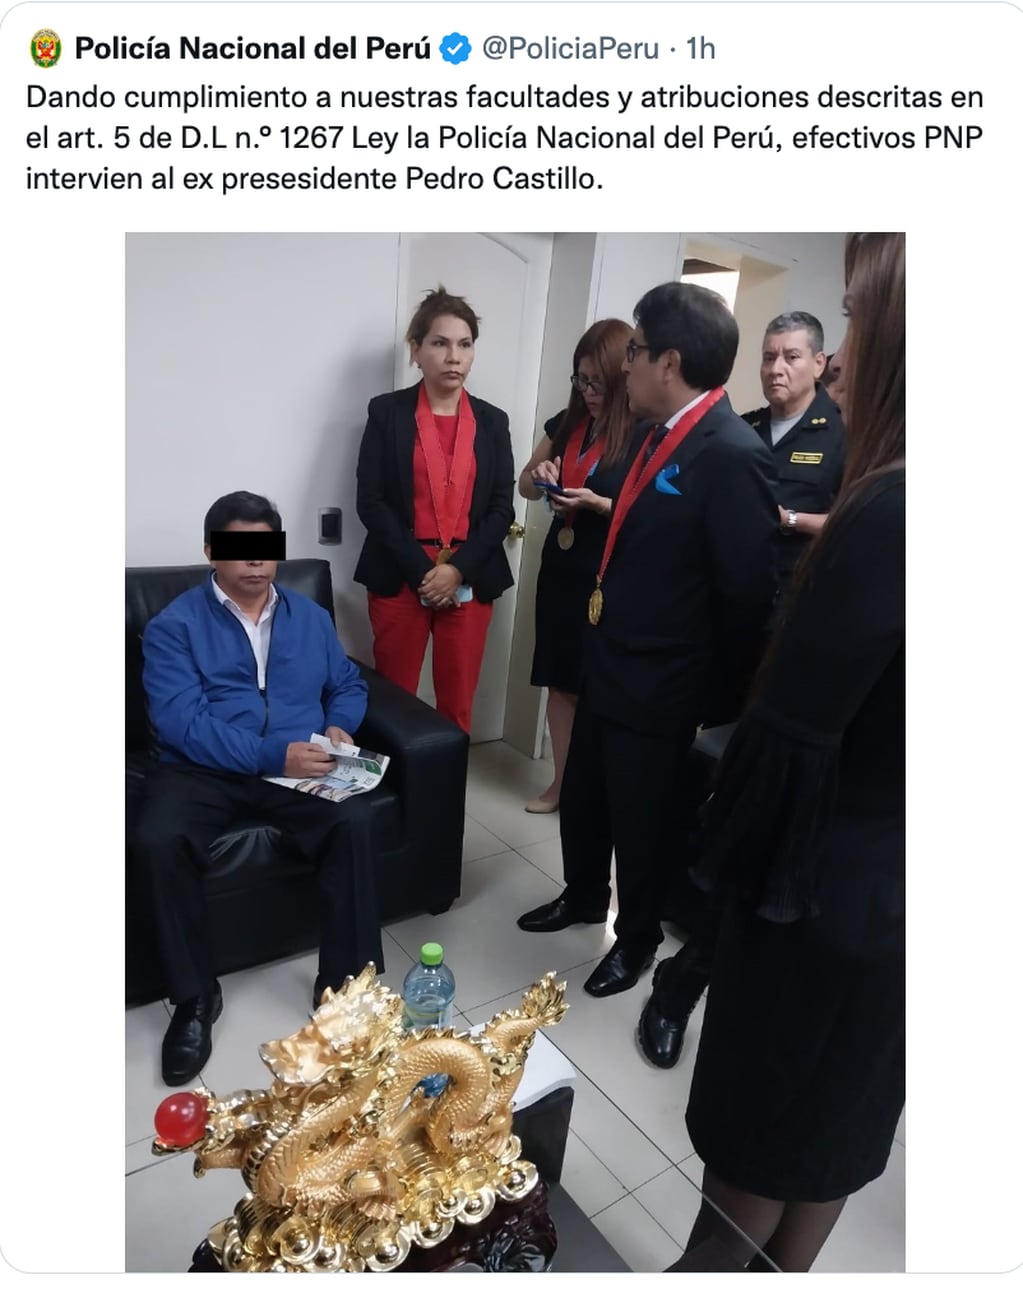 La Policía Nacional de Perú difundió la imagen de la detención de Pedro Castillo tras ser destituido como presidente de Perú.